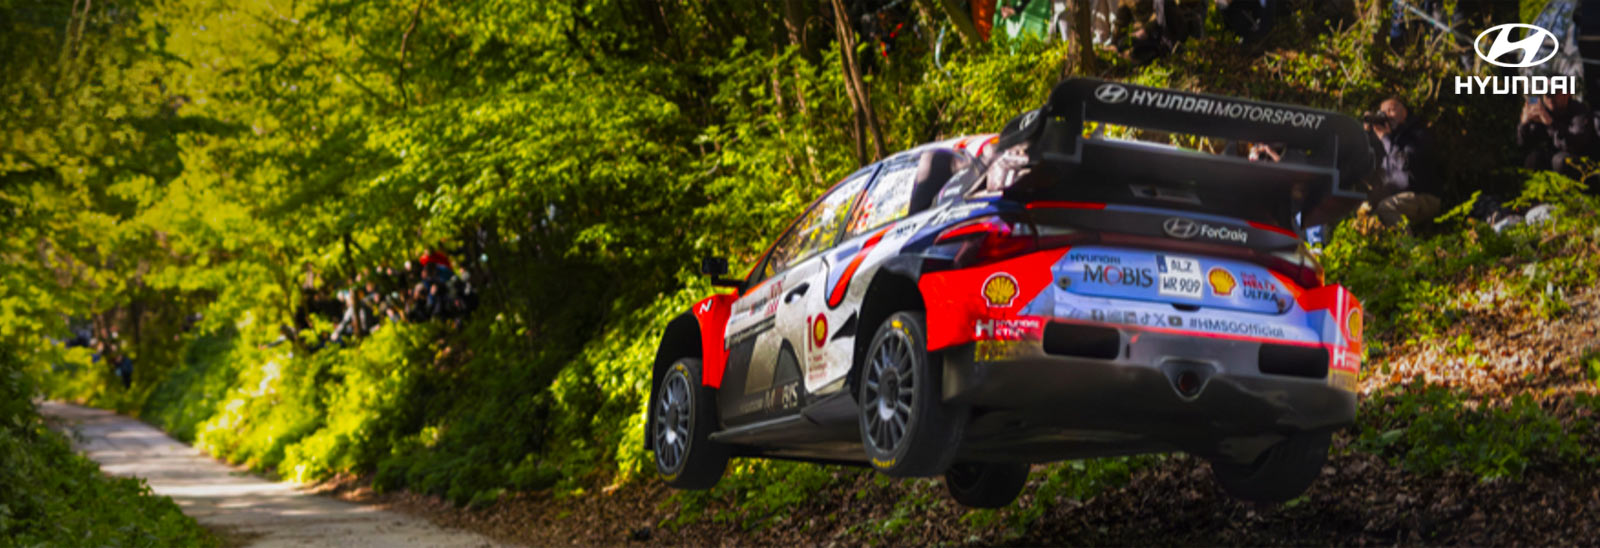 Hyundai sube al podio en el Rally de Croacia